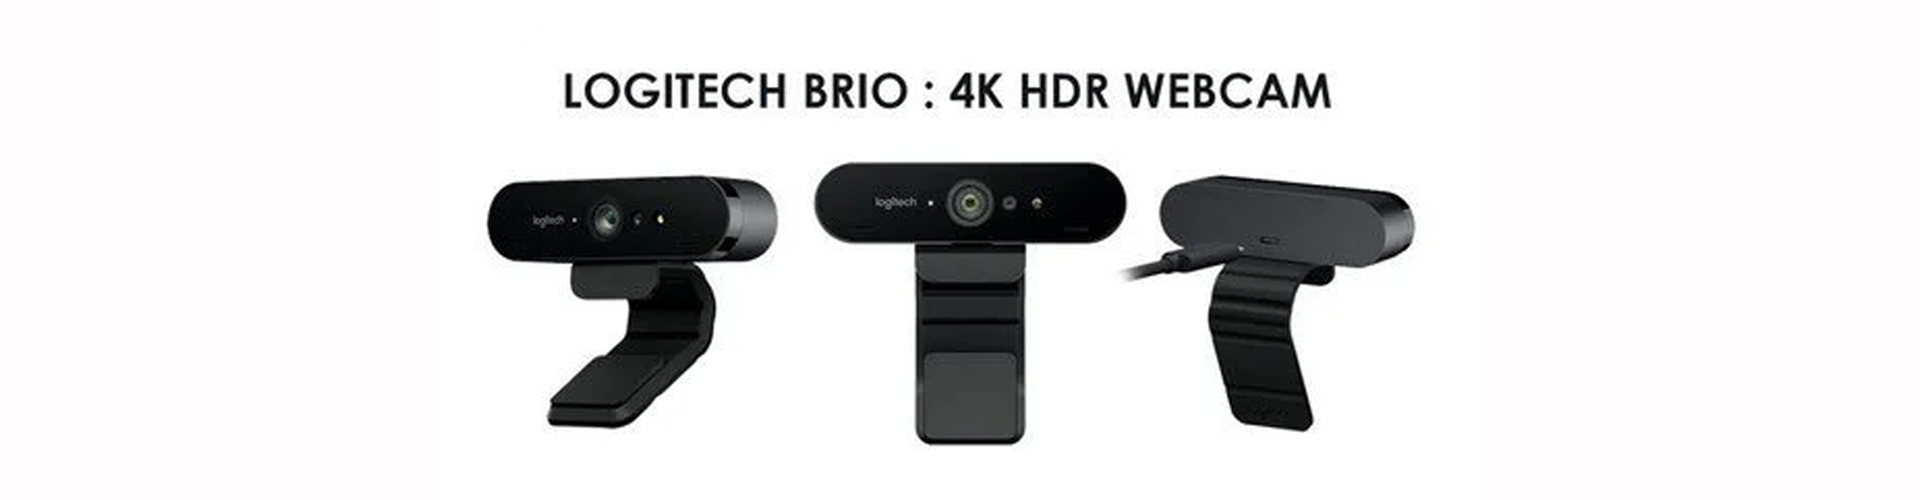 Đôi nét về thiết bị hội nghị Logitech Brio Ultra HD Pro